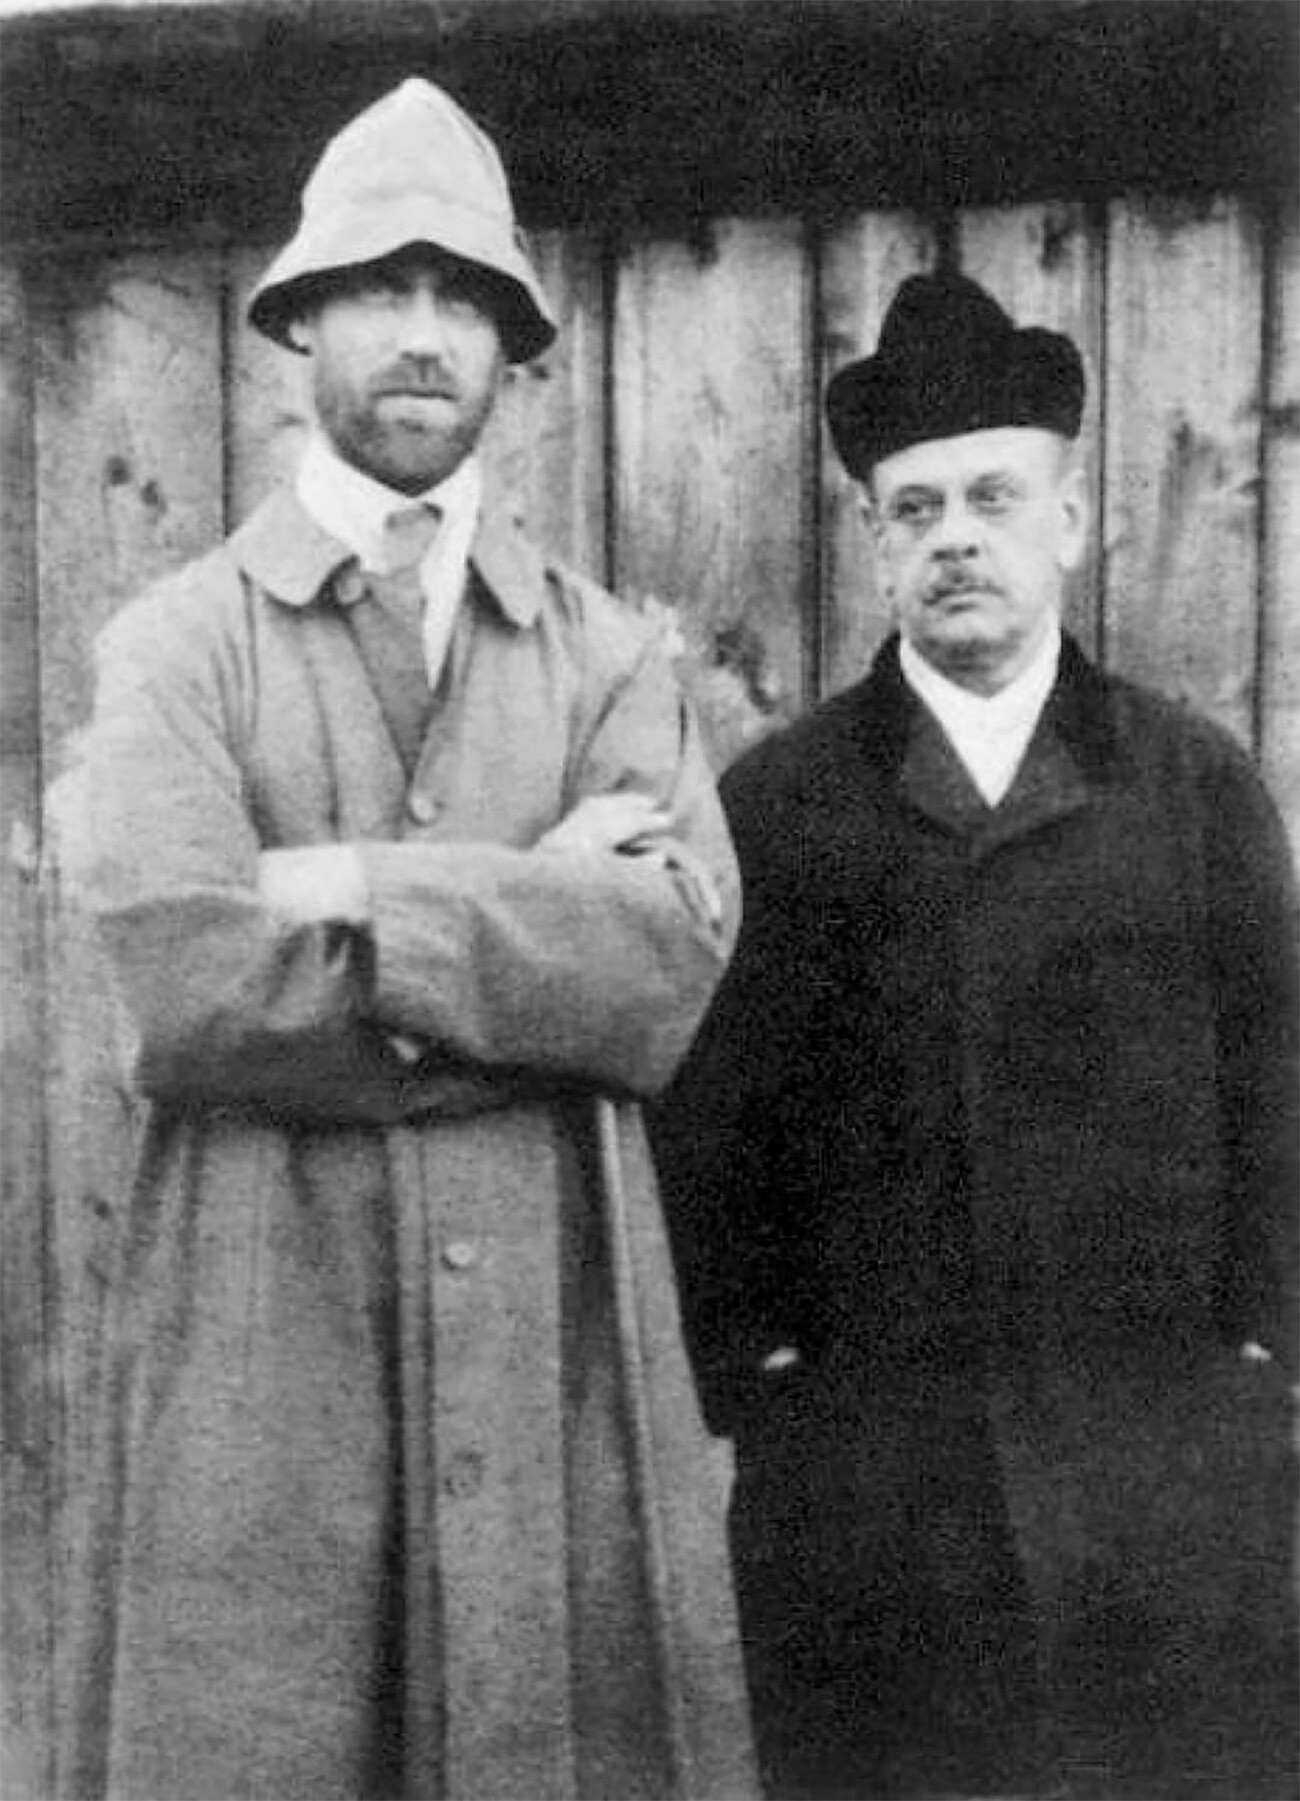 Mikhail Romanov nel 1918 a Perm durante la prigionia, poco prima di essere assassinato

